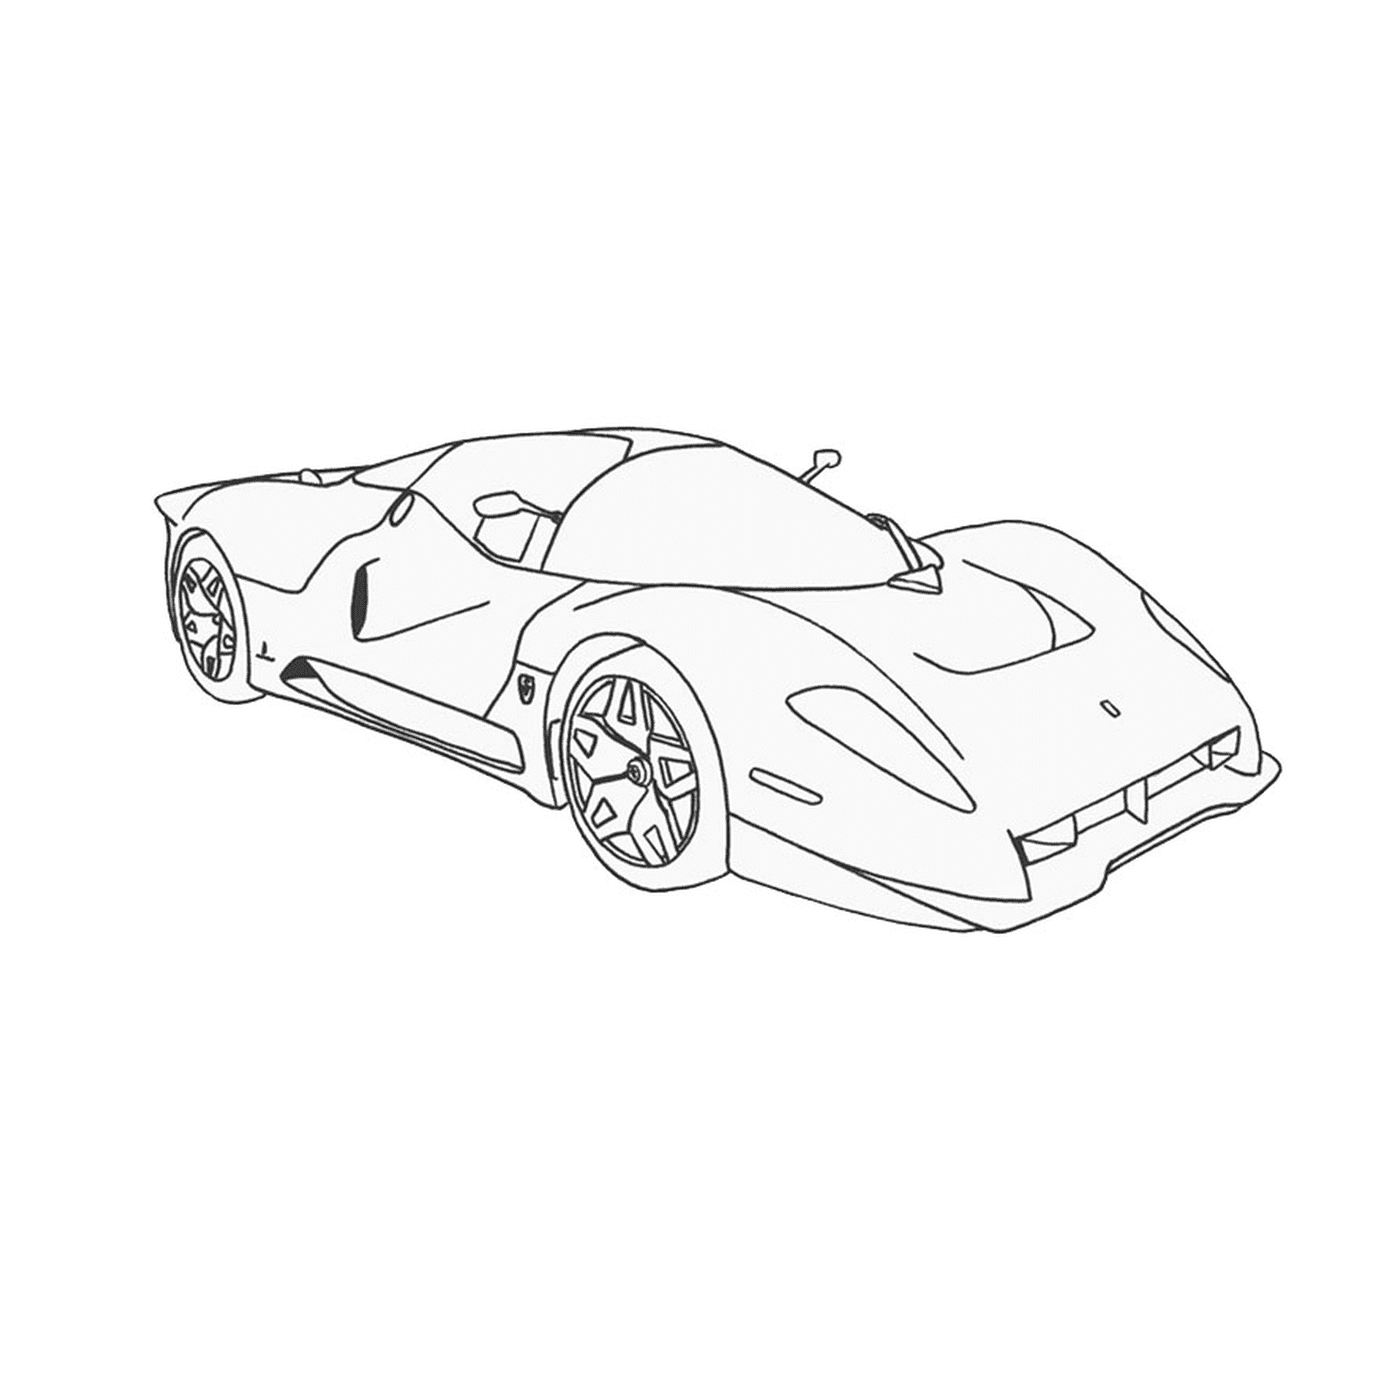  Desenho de um carro 